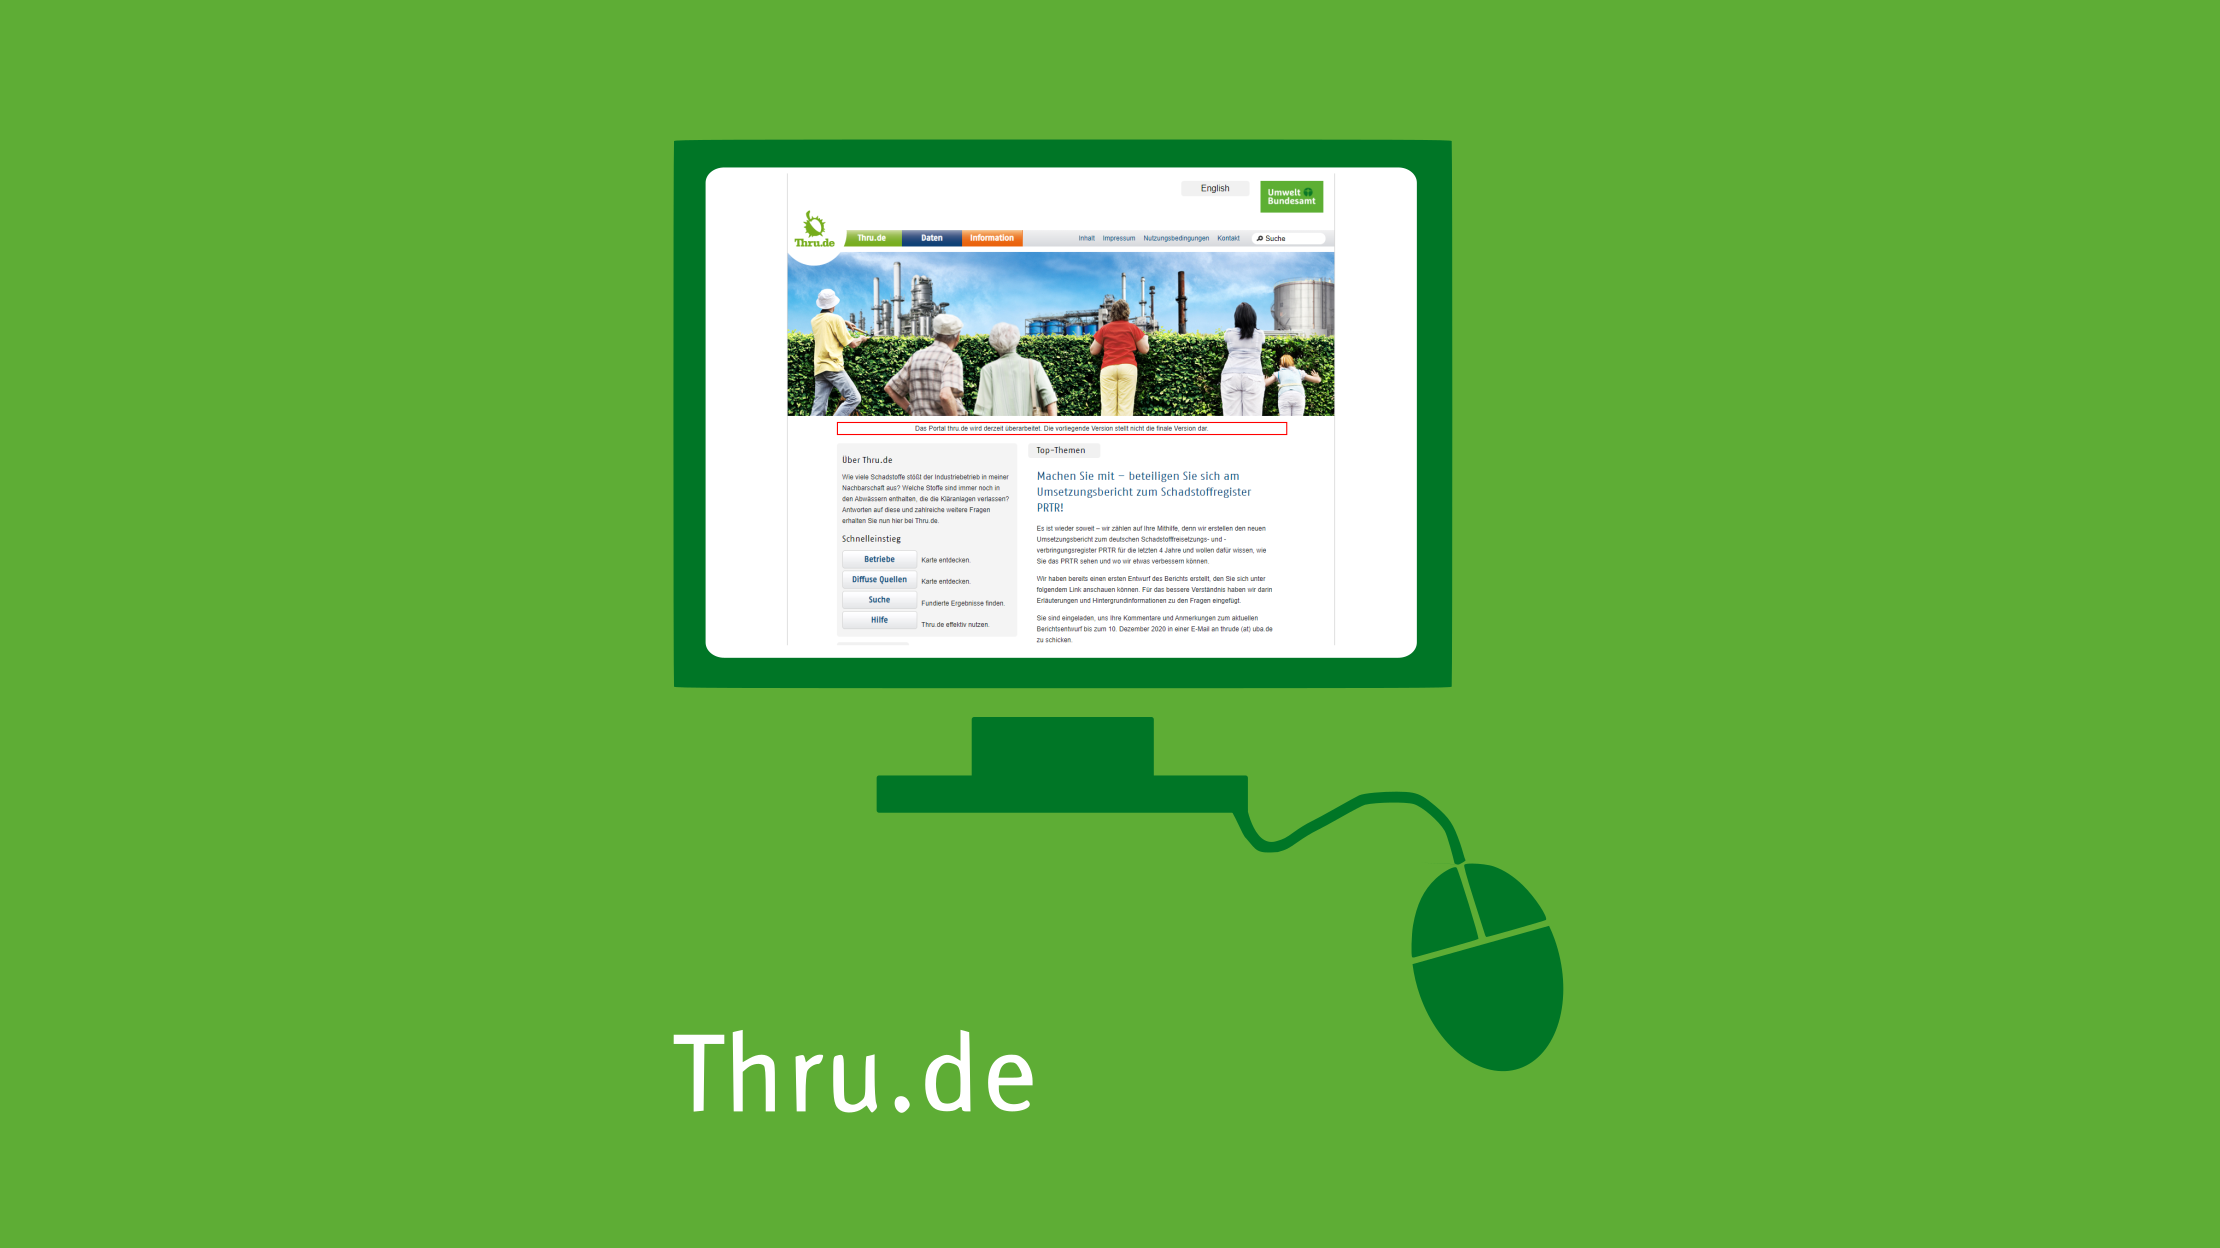 Mit Klick aufs Bild gelangen Sie zur verlinkten Thru.de-Website.